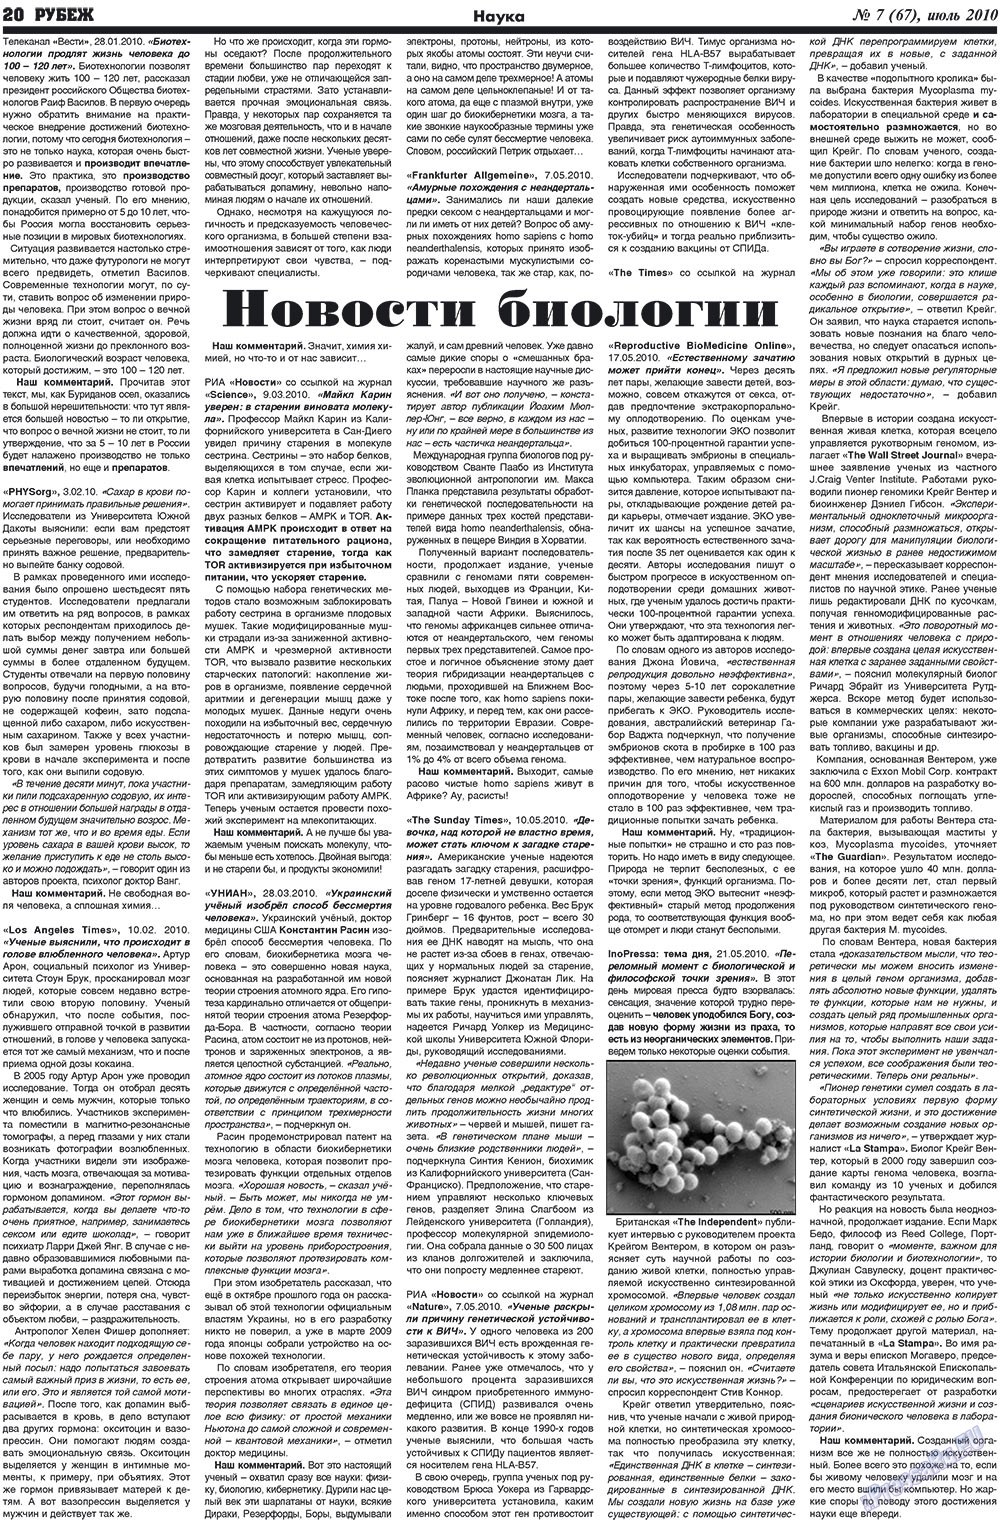 Рубеж (газета). 2010 год, номер 7, стр. 20